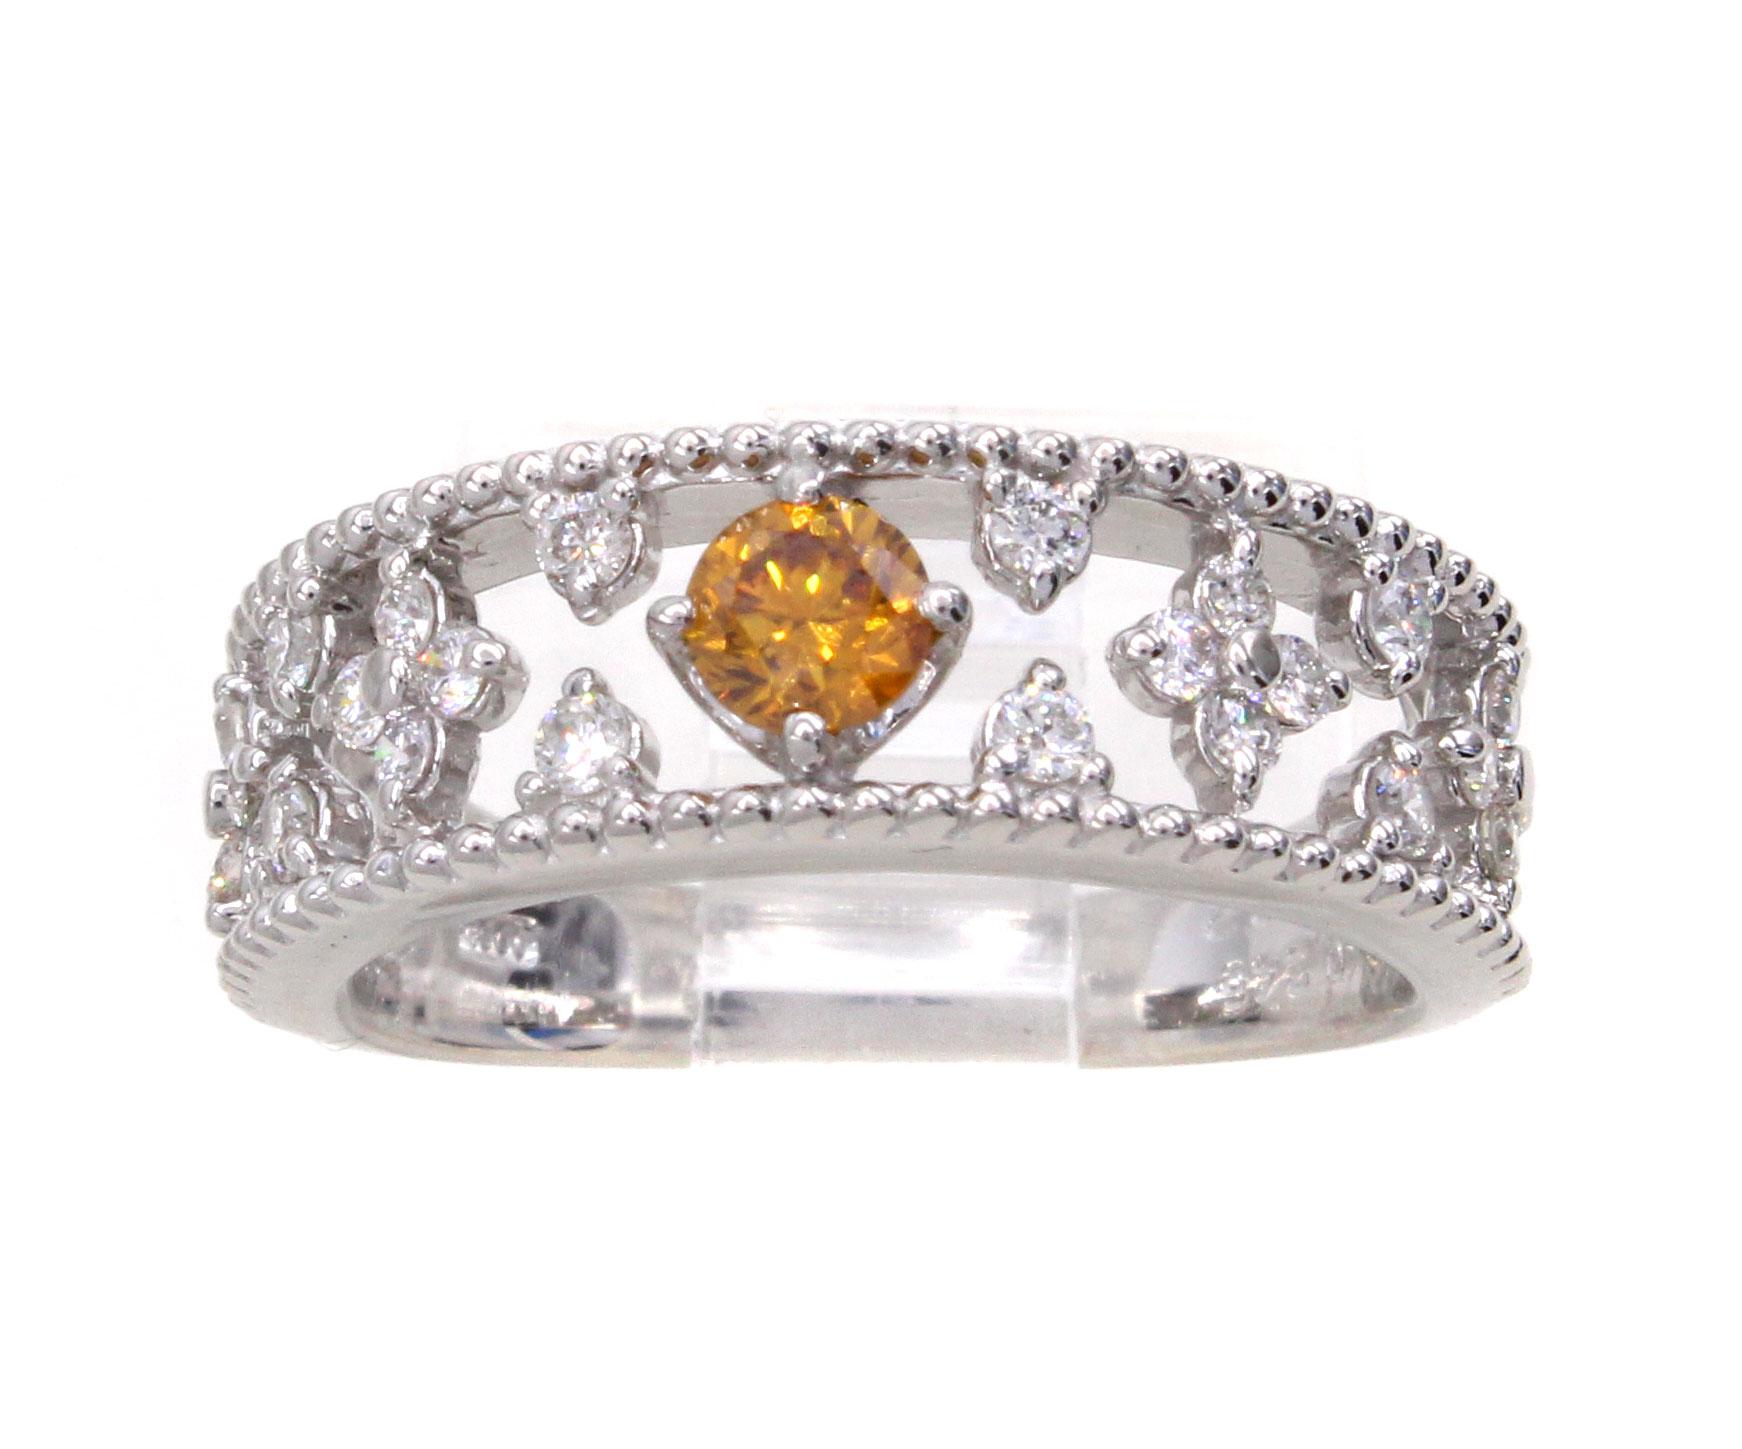 Ein leuchtend orangefarbener Diamant im Brillantschliff mit einem Gewicht von 0,24 Karat ist das Herzstück dieses hübschen Platin-Ewigkeitsbands. Begleitet von einem Bericht des GIA wird die Farbe als natürliches Fancy-Gelb-Orange eingestuft. Das